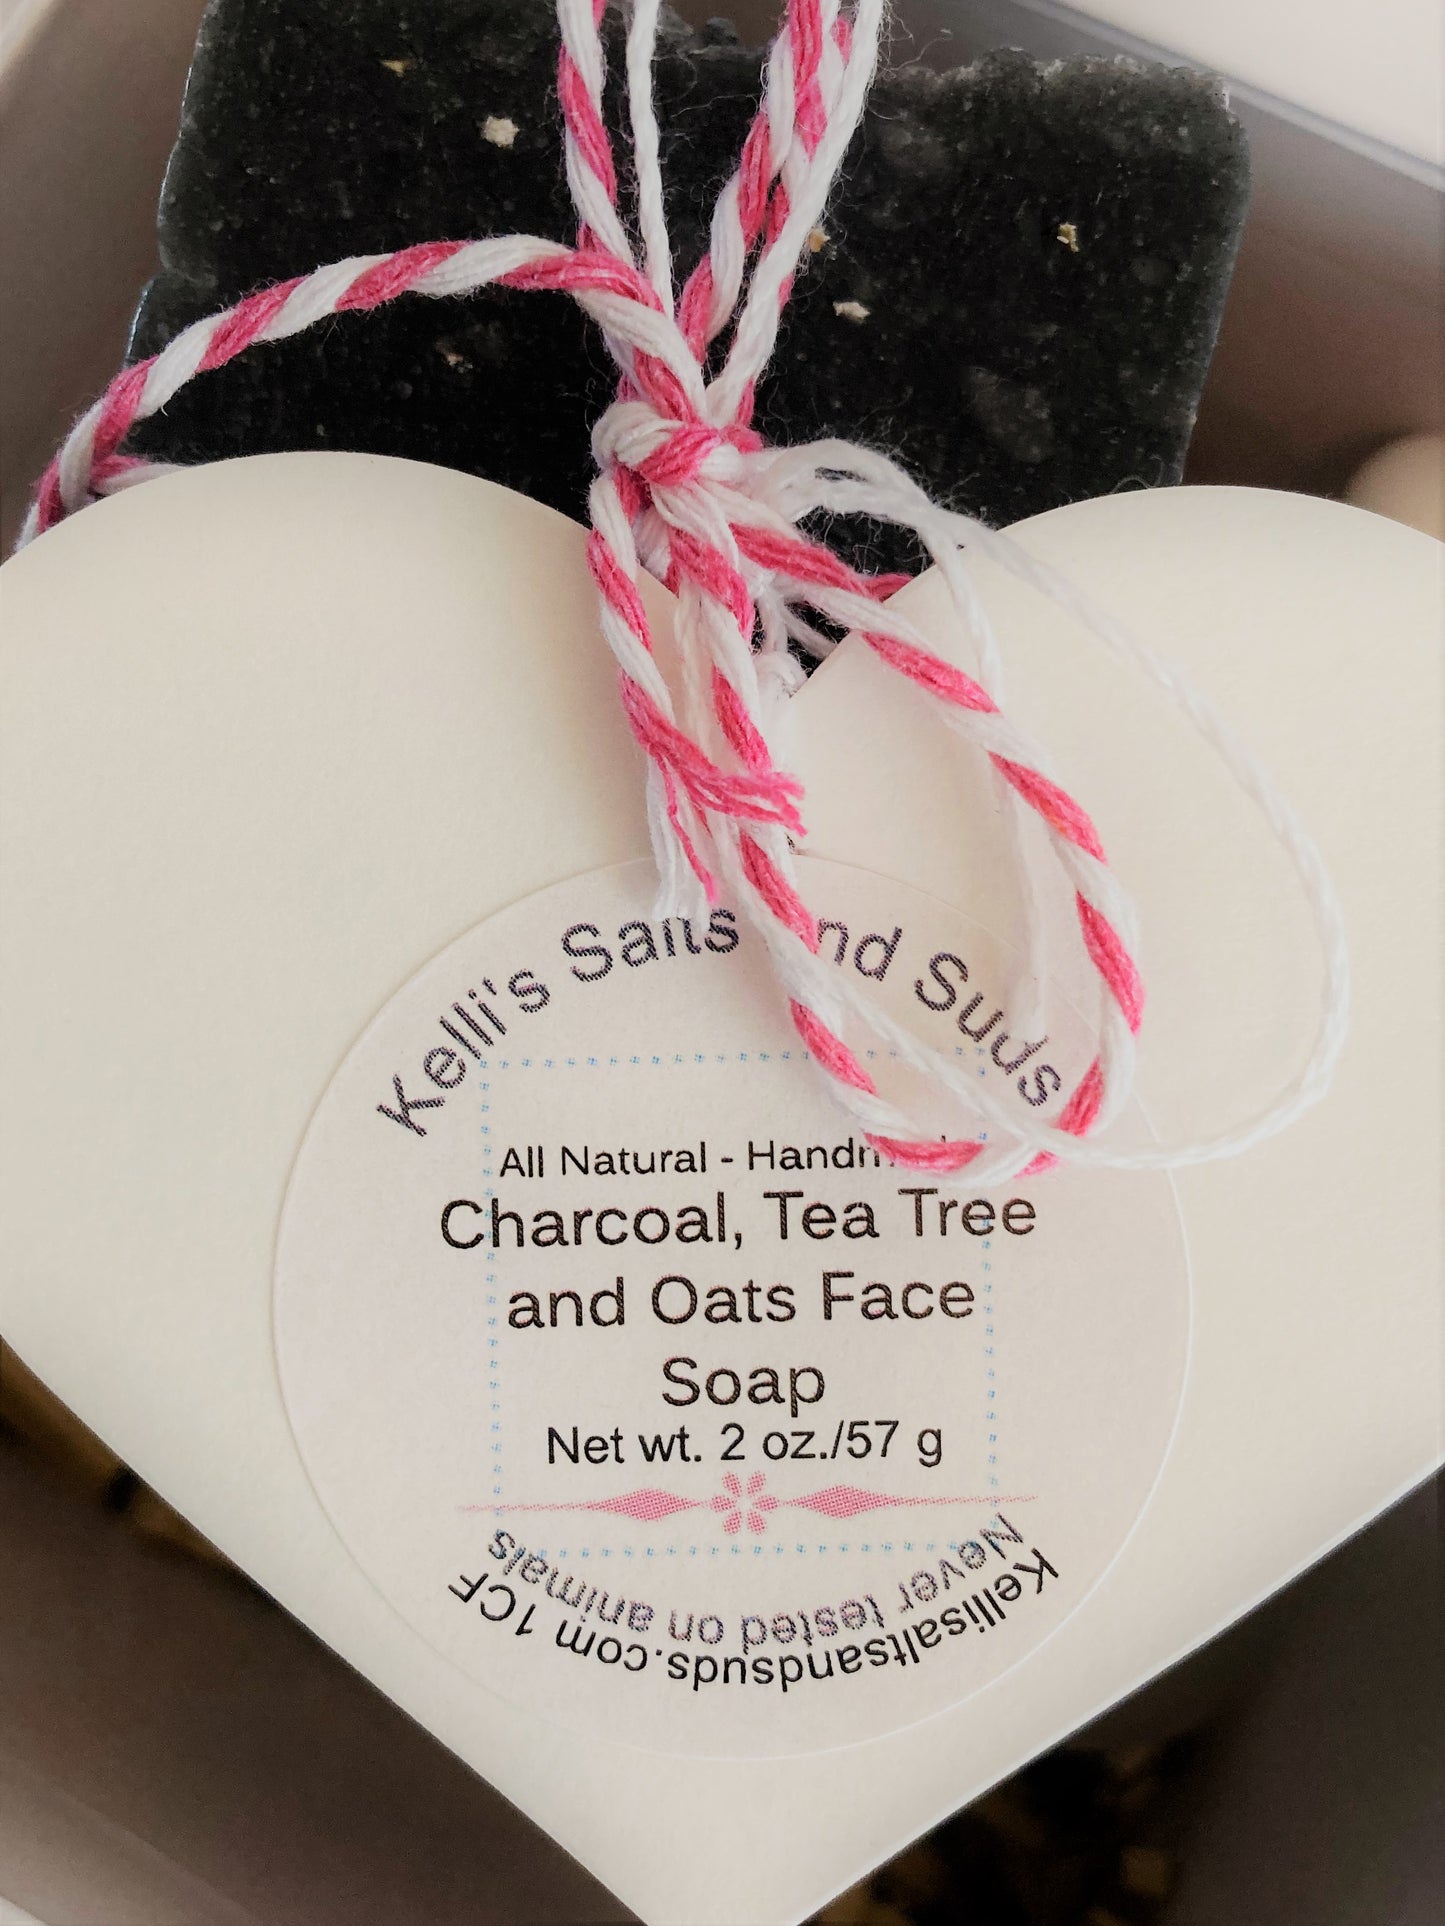 Charcoal, Tea Tree & Oats Facial Bar Soap